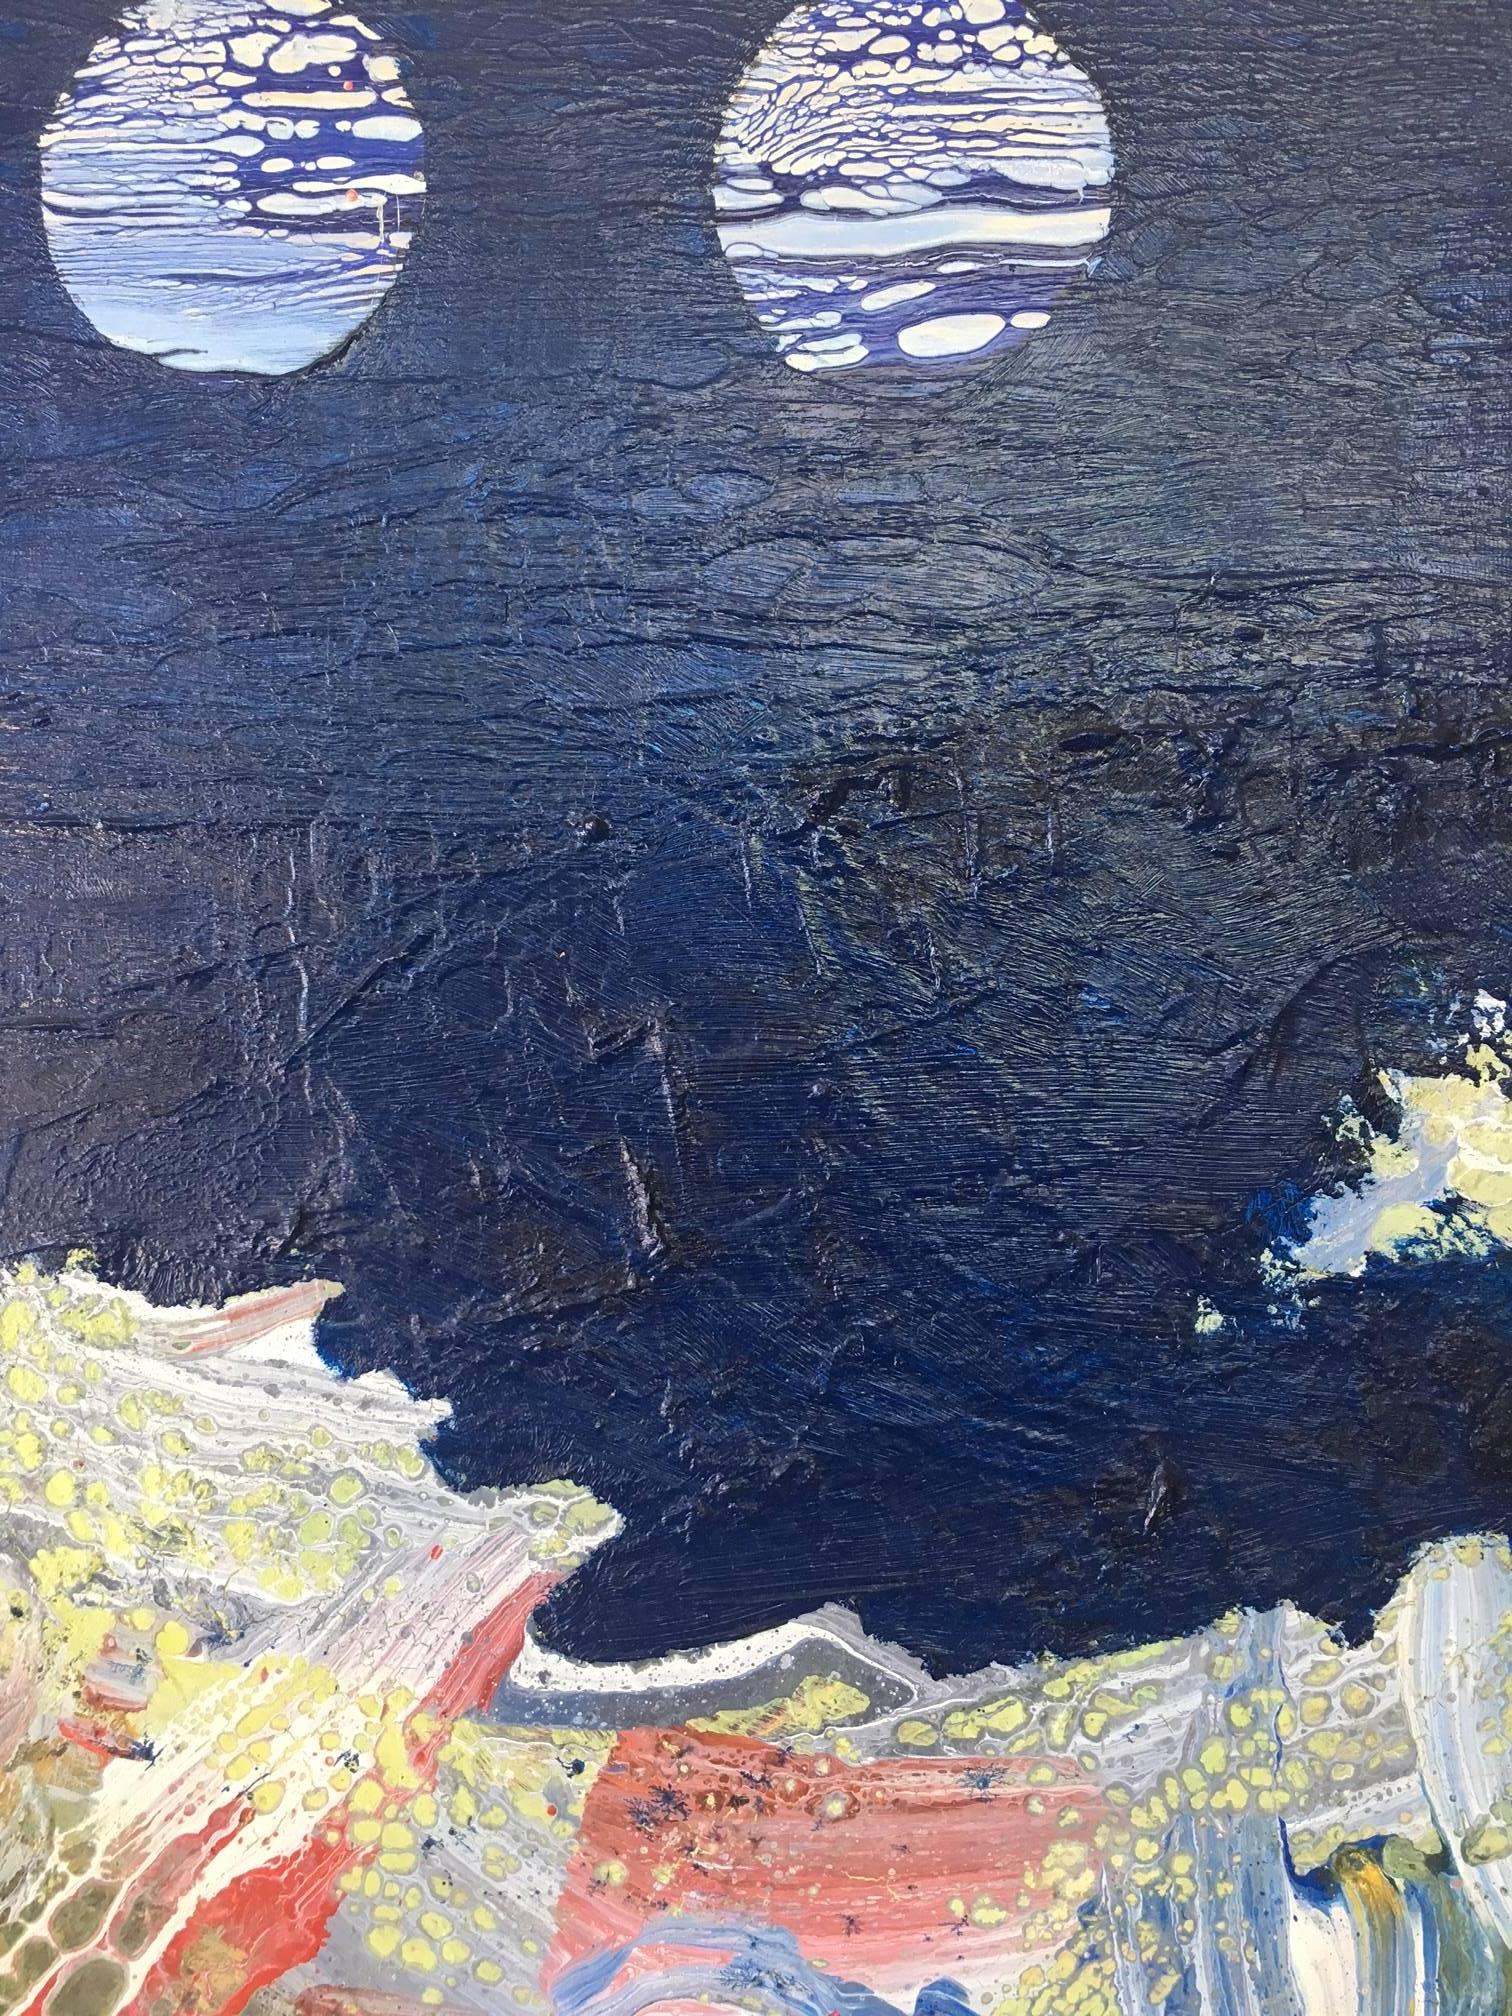  I. Cahue- La mer et la lune. peinture abstraite originale sur toile à l'acrylique.  encadré
 de l'artiste espagnol ISIDRO CAHUE.
Acrylique sur toile
Un état parfait

La personnalité de l'artiste se reflète dans différents domaines de l'art. Son